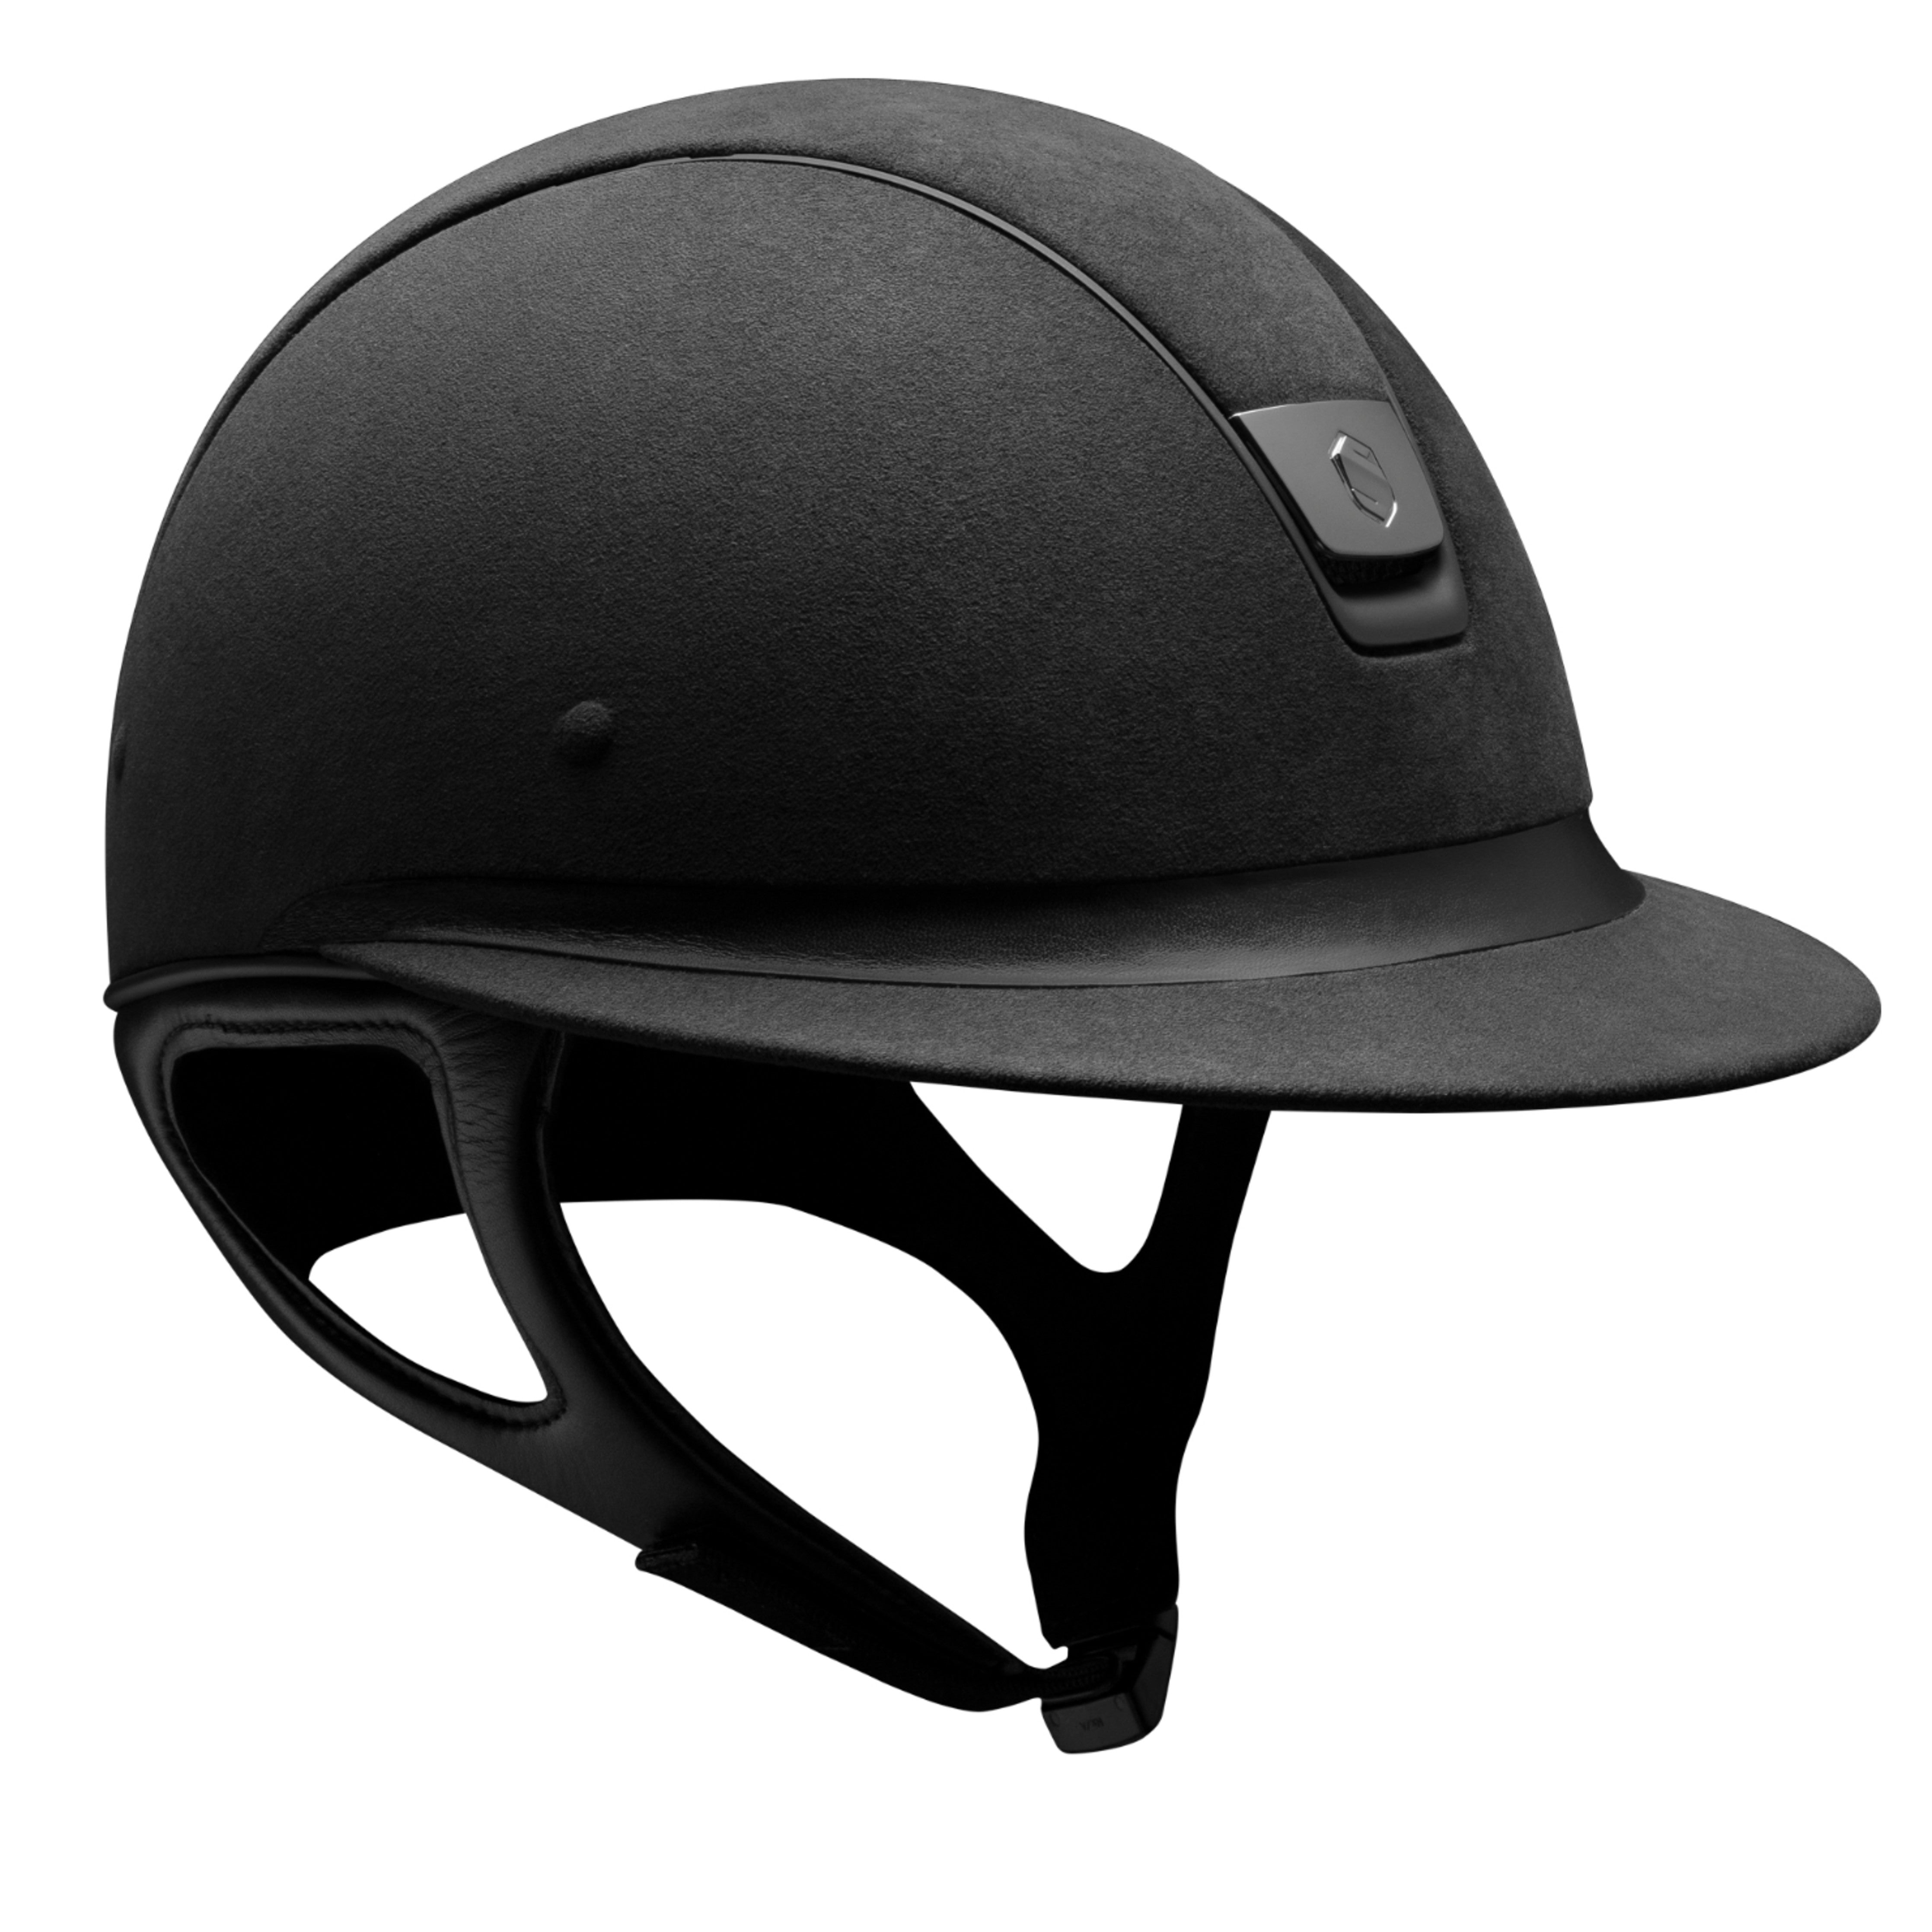 Samshield 1.0 Miss Shield Premium Helmet